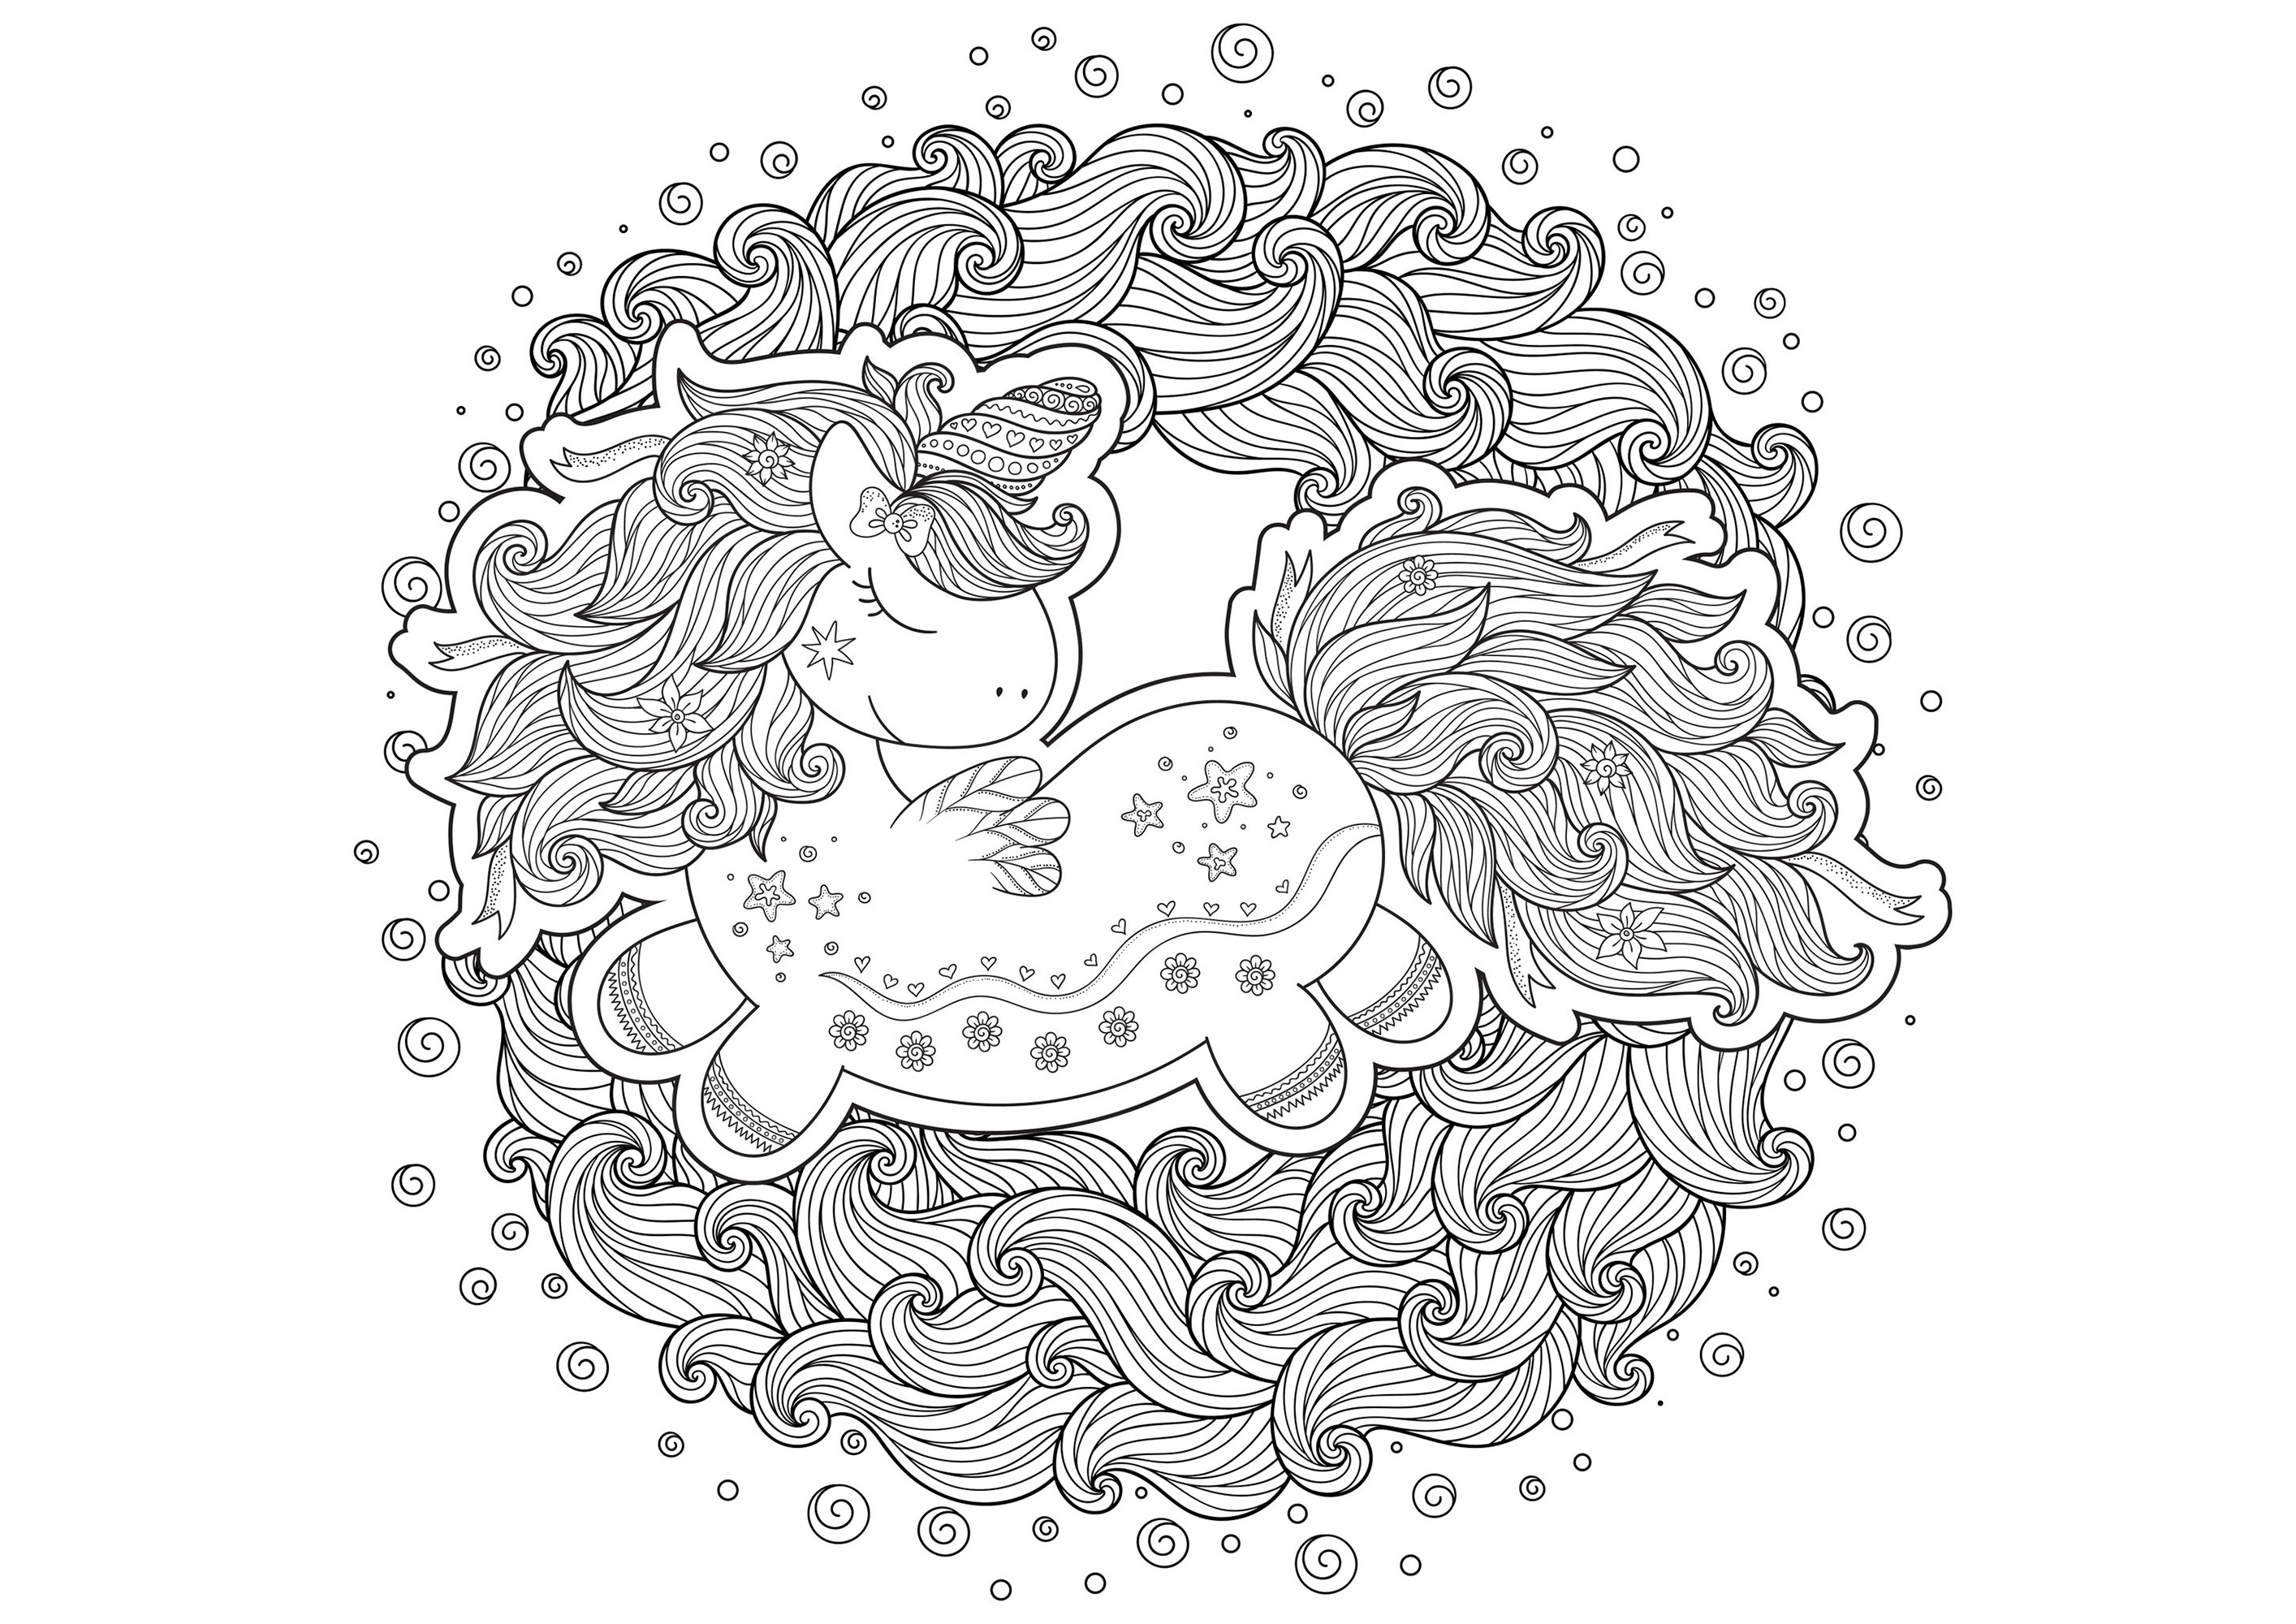 Unicorno disegnato in stile cartoon, al centro di onde che formano un cerchio